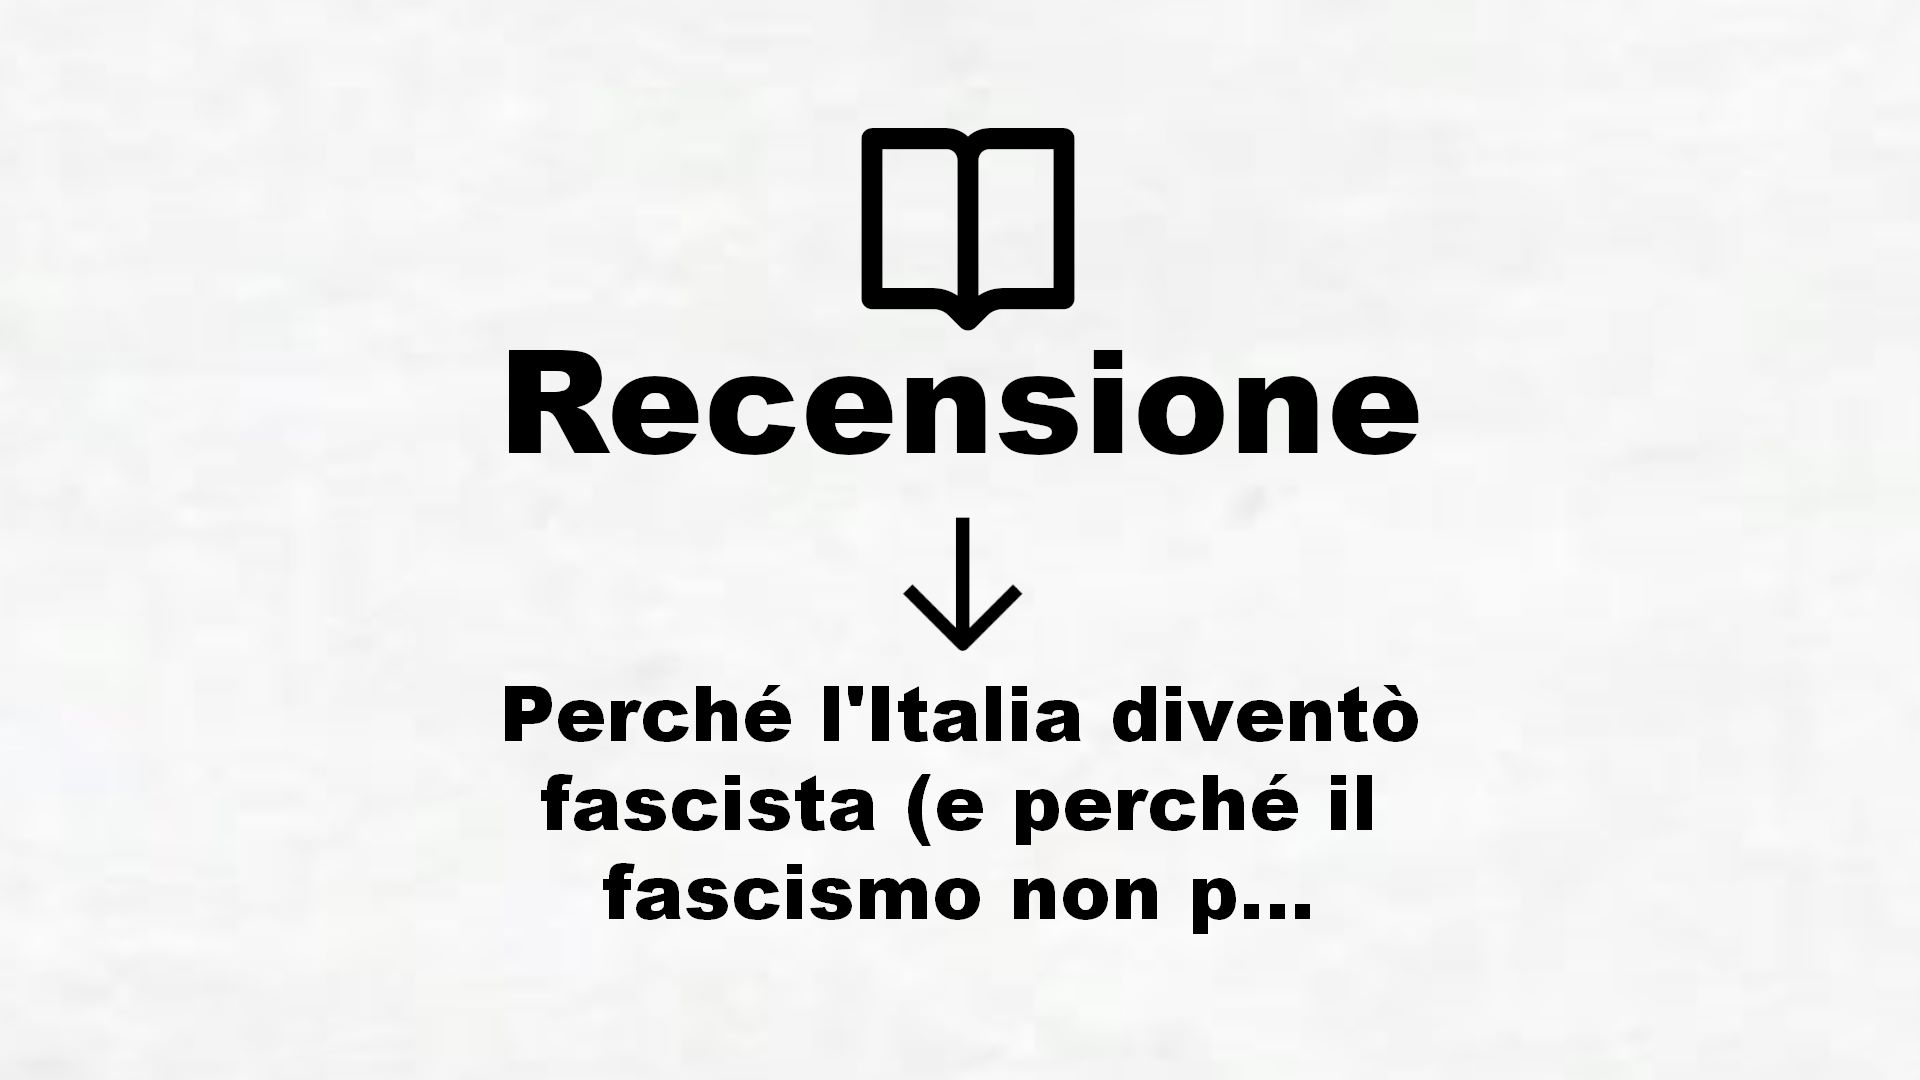 Perché l’Italia diventò fascista (e perché il fascismo non può tornare) – Recensione Libro